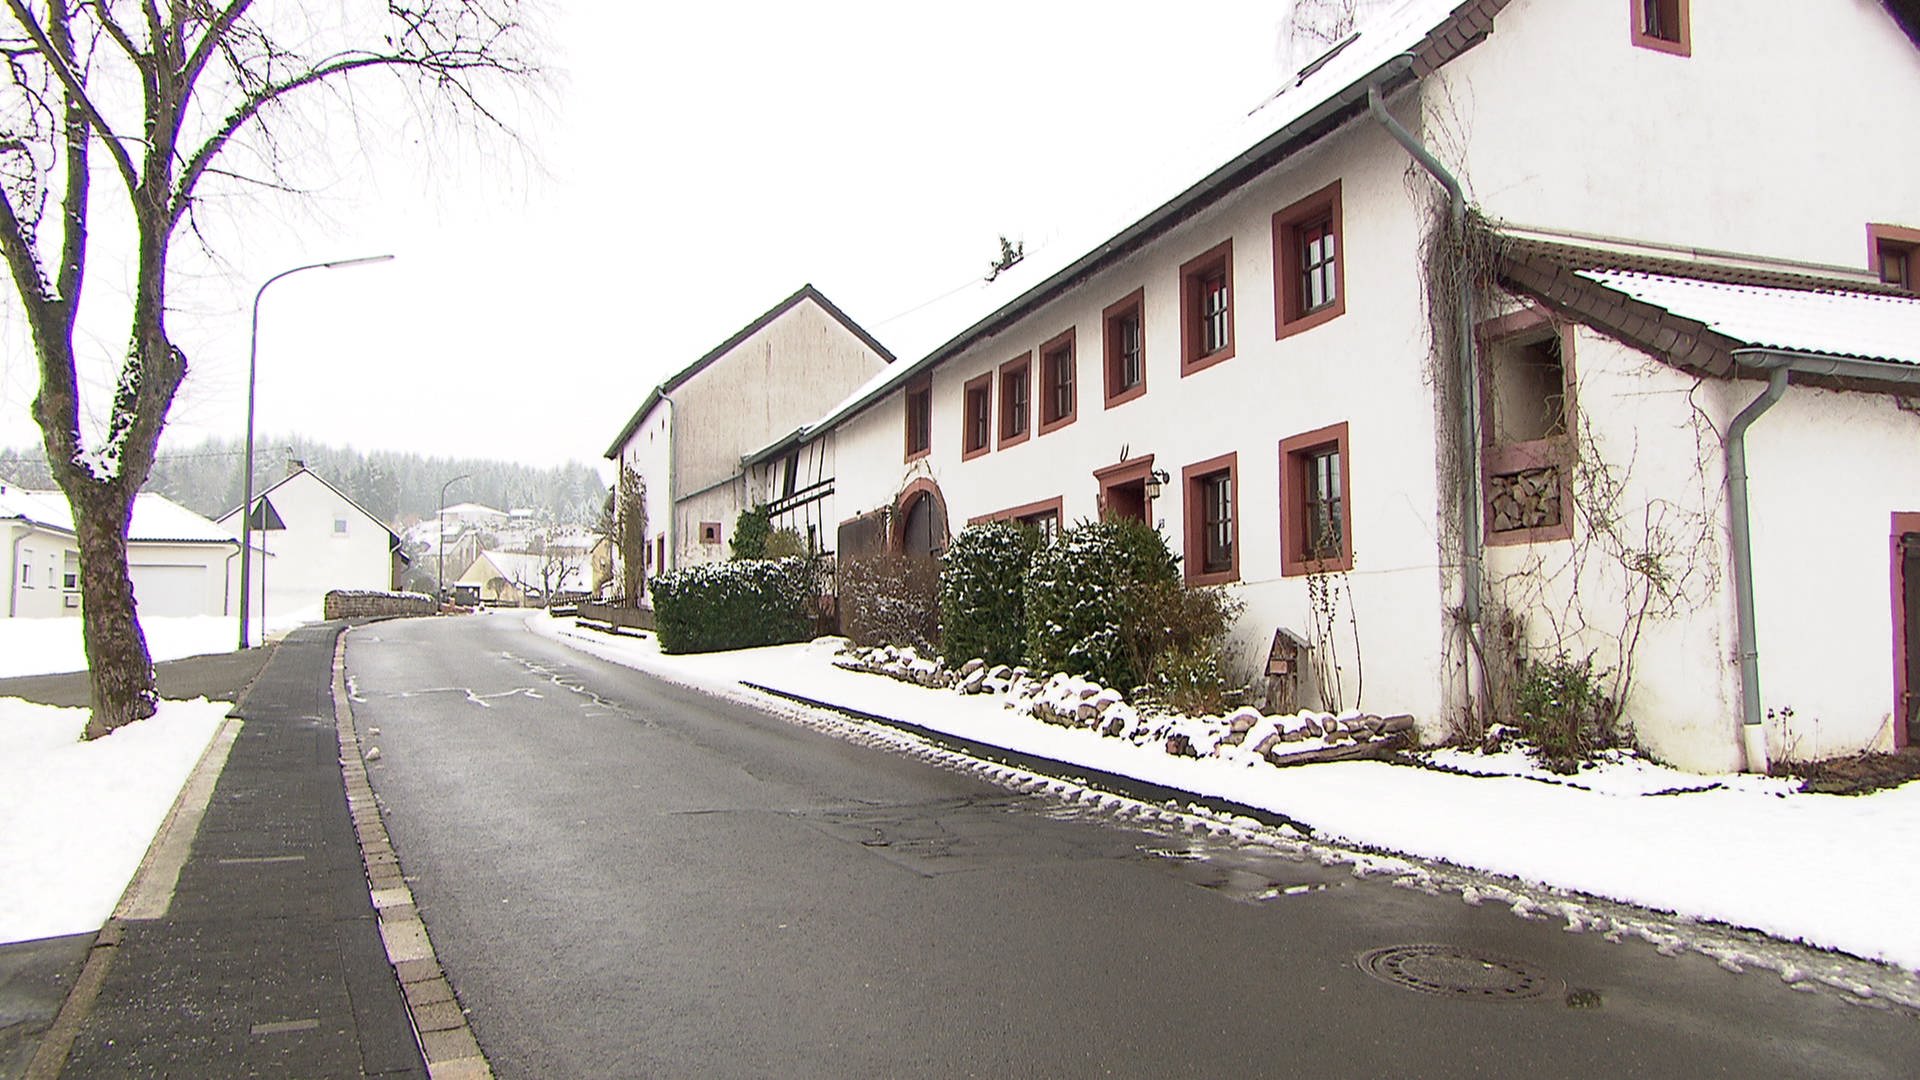 Die Densborner Strasse In Neidenbach Landesschau Rheinland Pfalz Swr Fernsehen